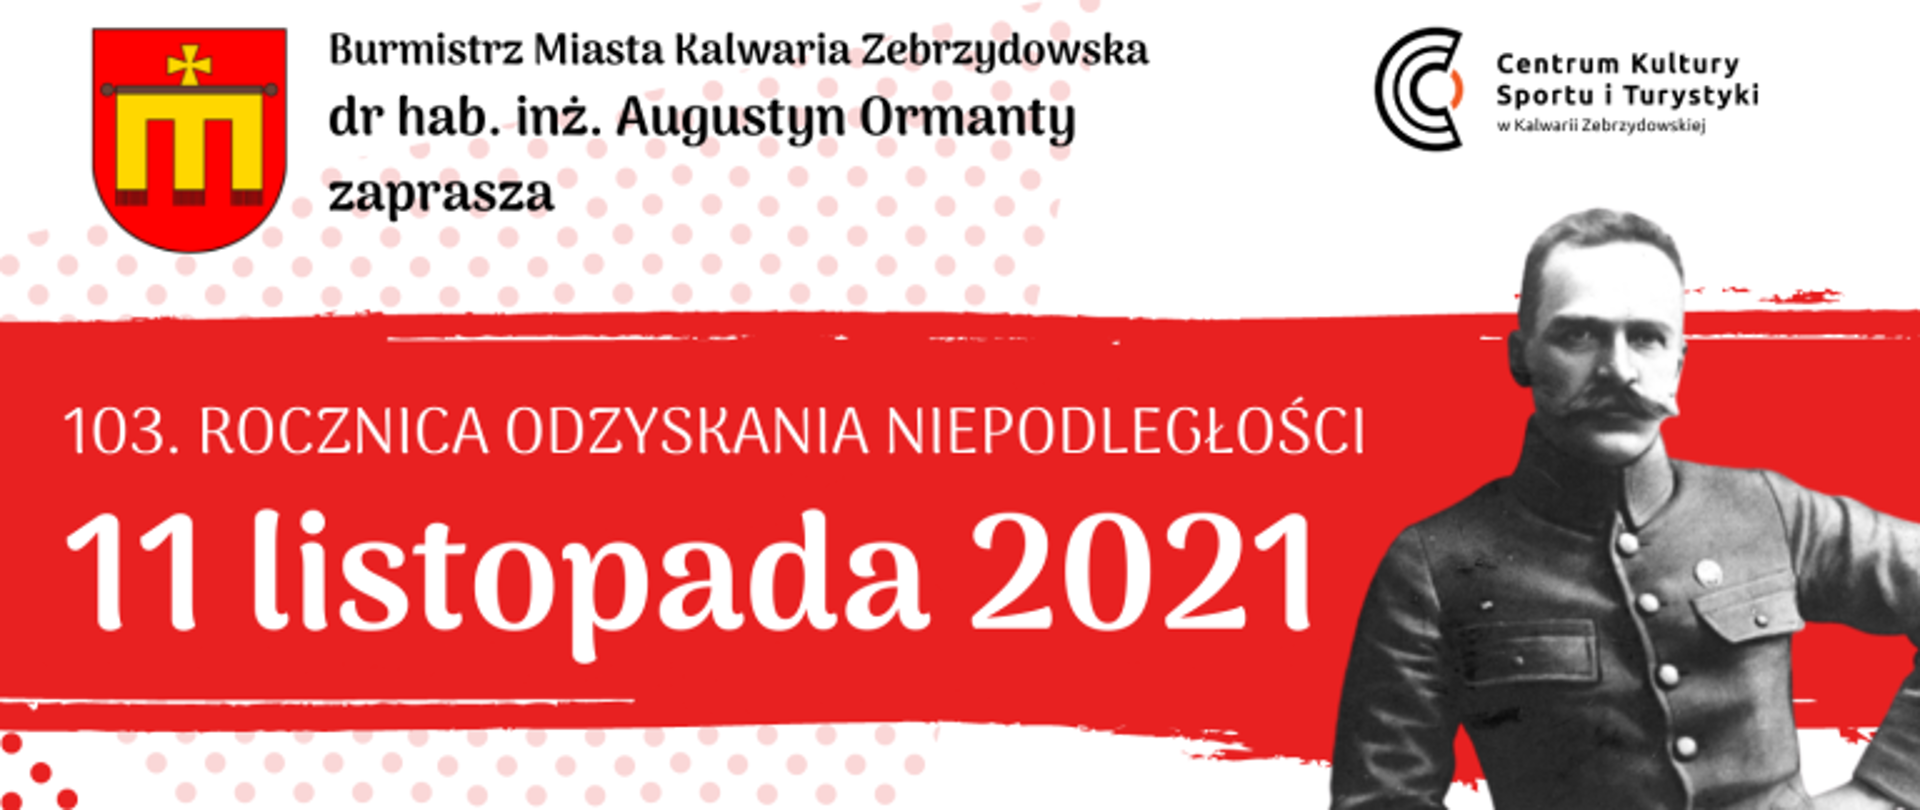 Plansza informacyjna - Program z okazji Święta Niepodległości. Tło biało-czerwone, w górnym prawym rogu herb Kalwarii Zebrzydowskiej, a po prawej Marszałek Józef Piłsudski. 